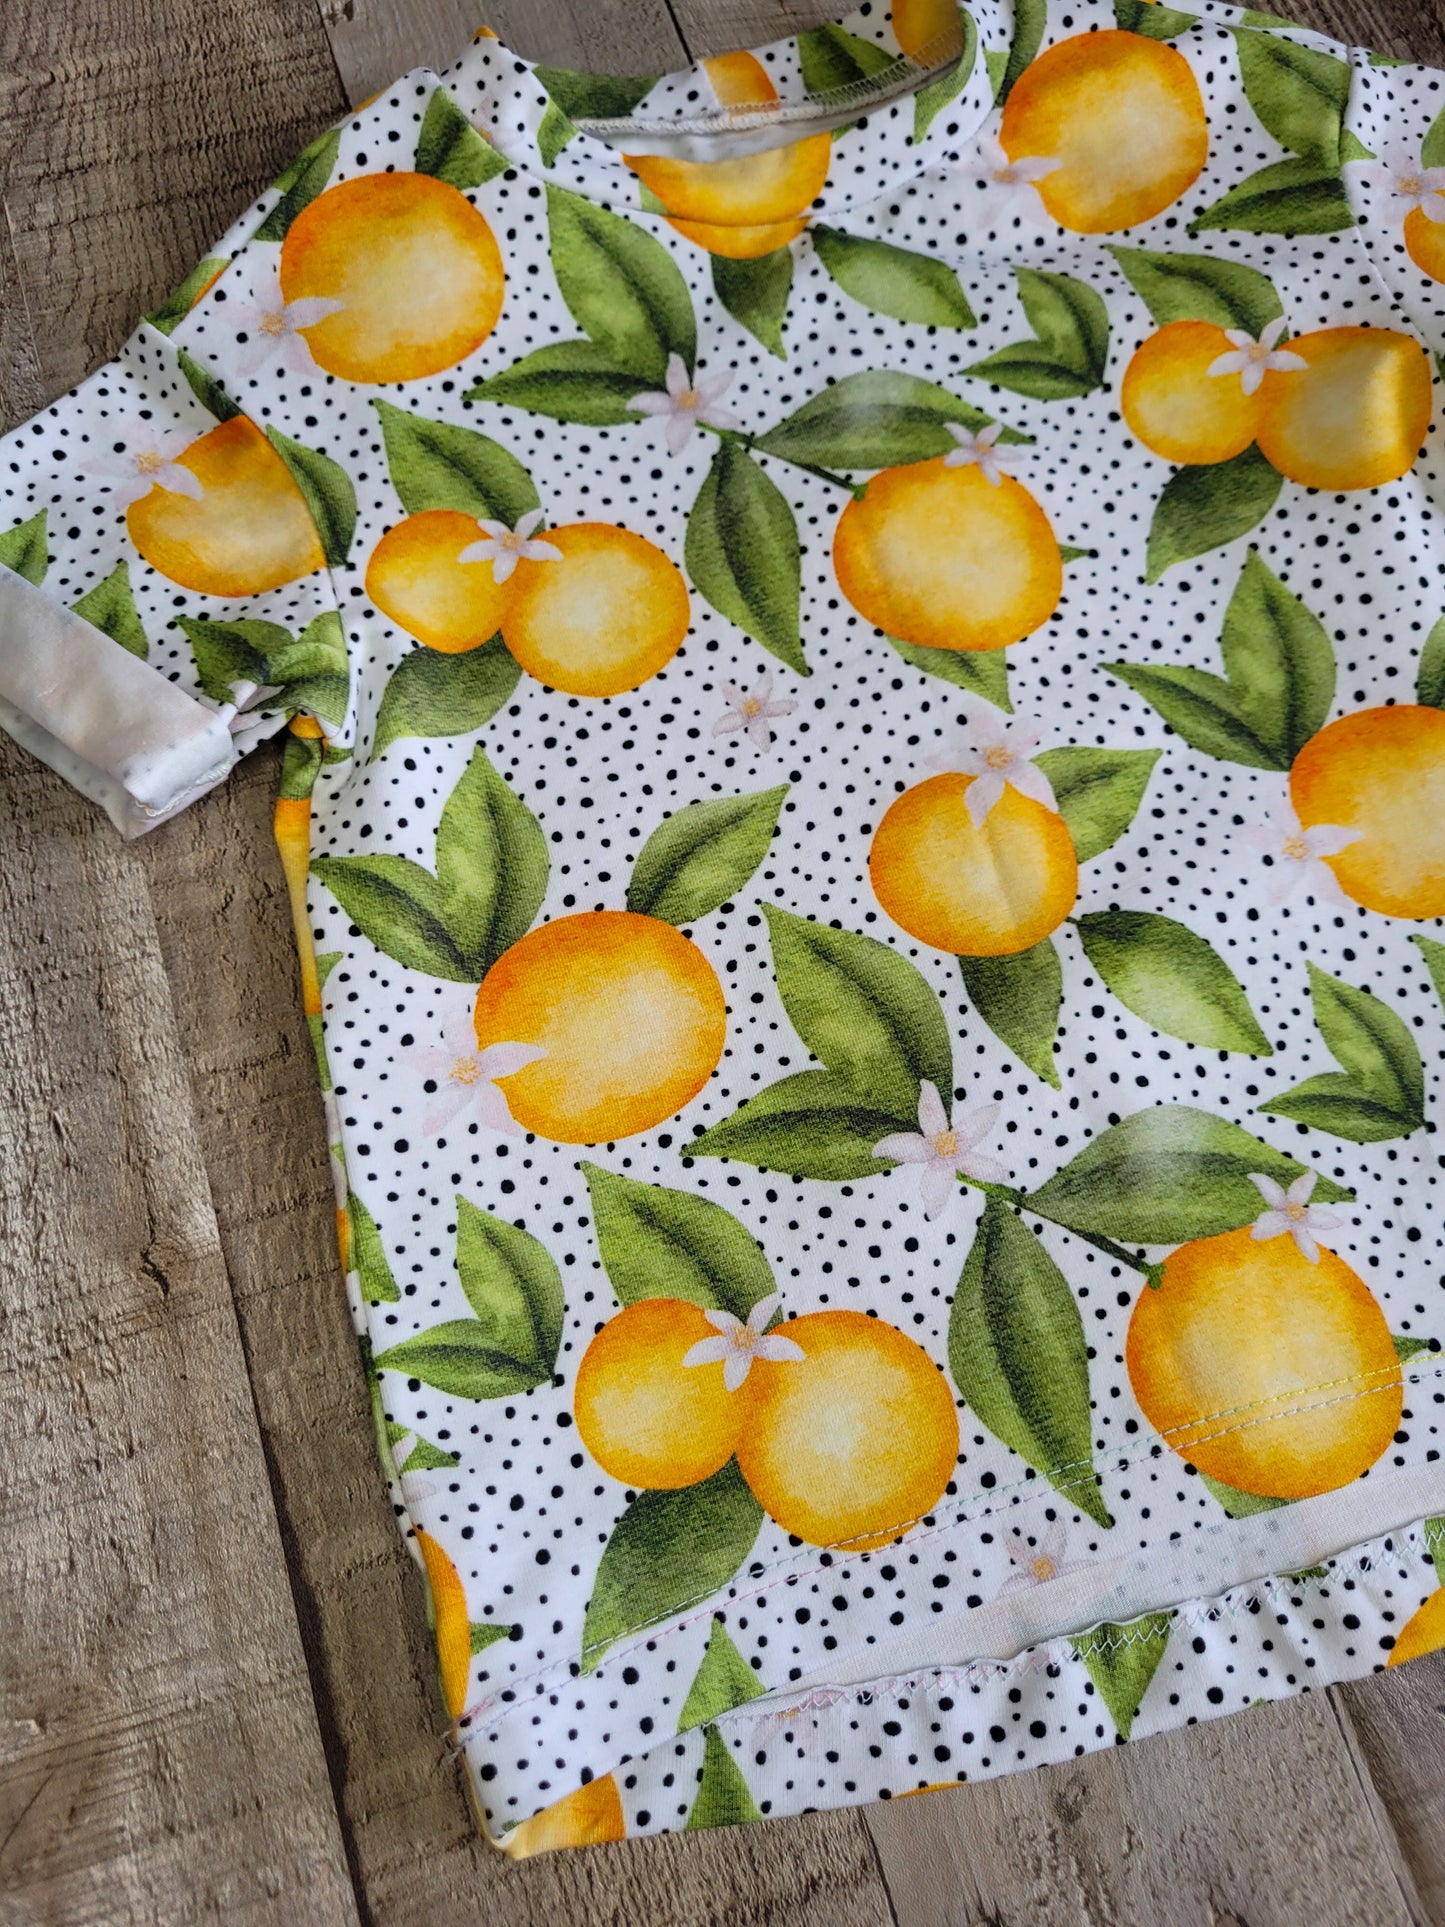 Oranges set